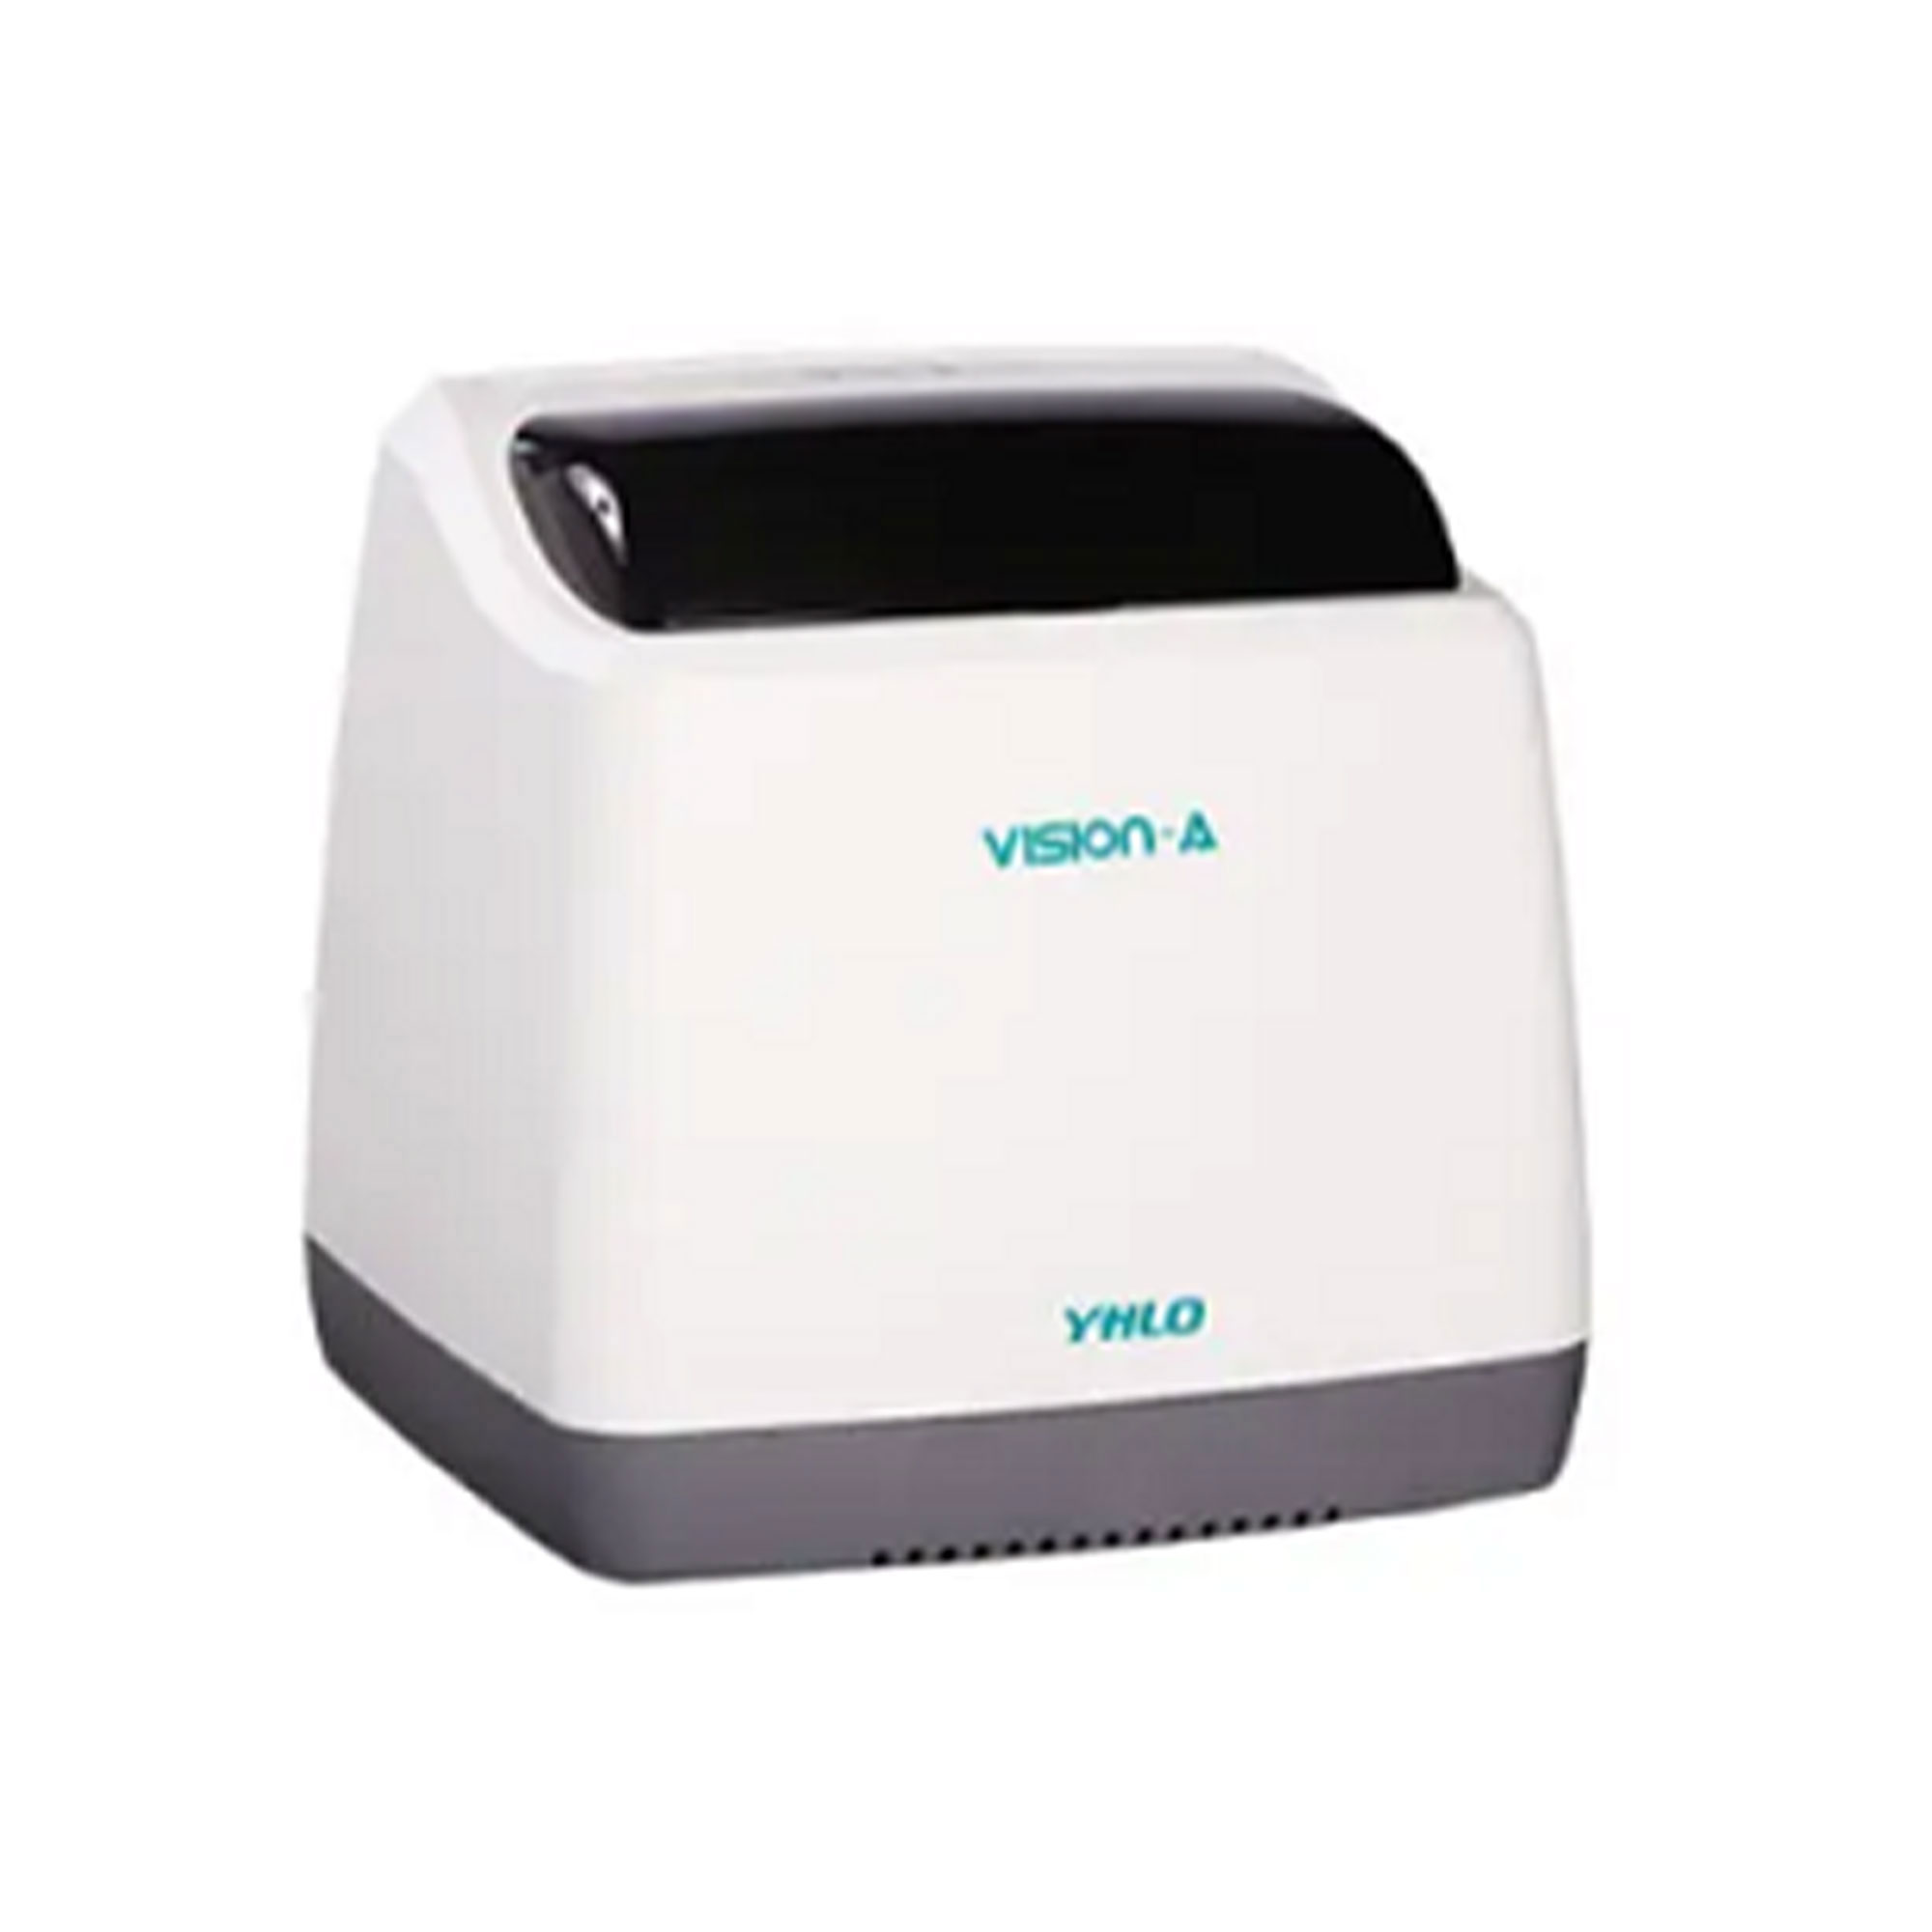 دستگاه سدیمان  آنالایزر - Vision ESR Analyzer16 - VHLO - دستگاه - هماتولوژی و بانک خون - آریا تشخیص پارس